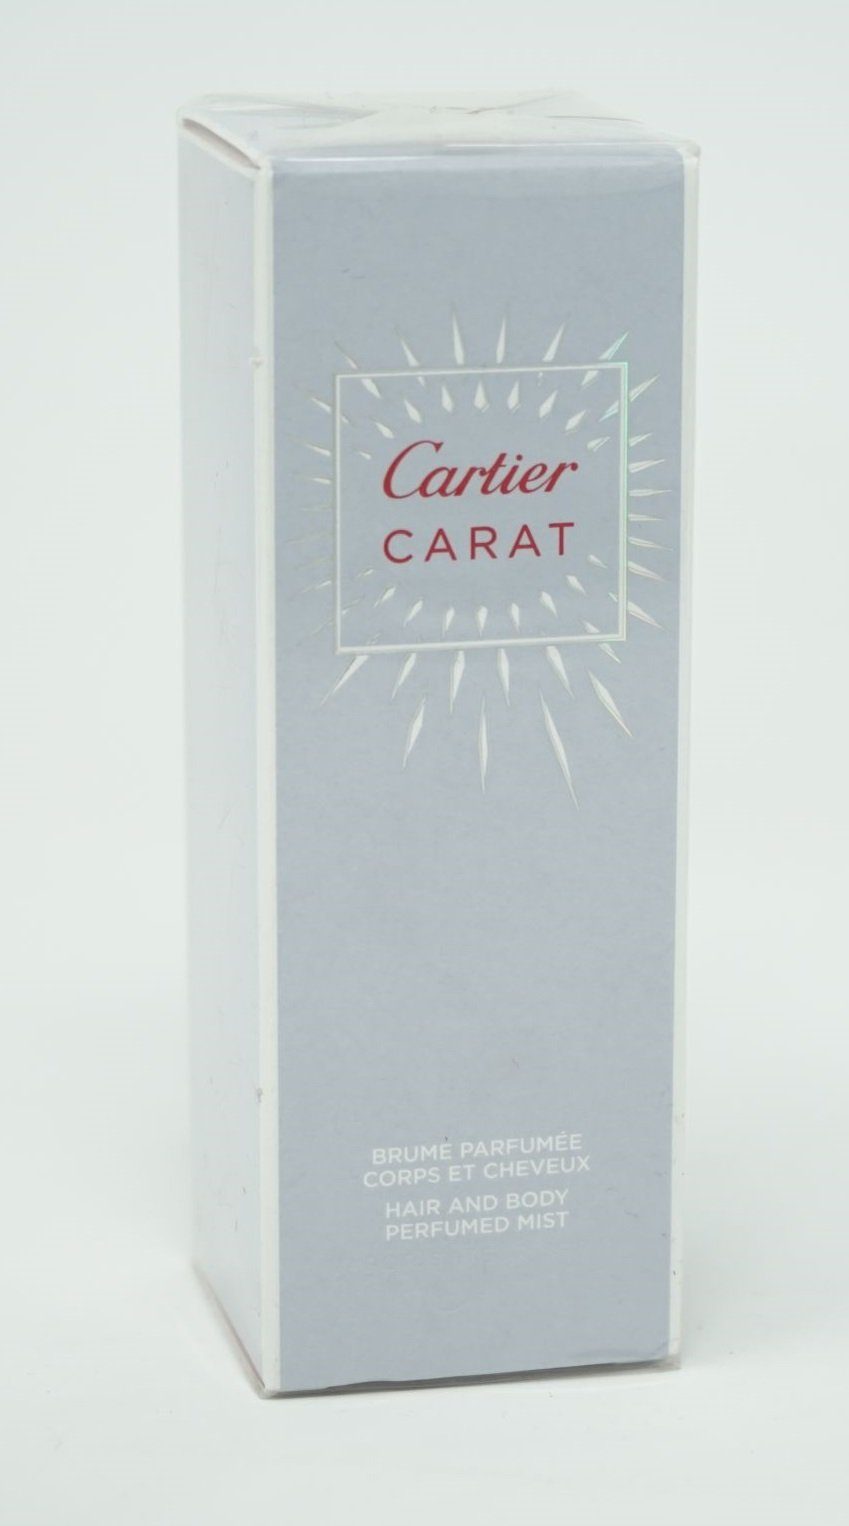 [Sonderangebot] Cartier Körperspray Cartier Carat and Mist 100ml Body Perfumed Hair